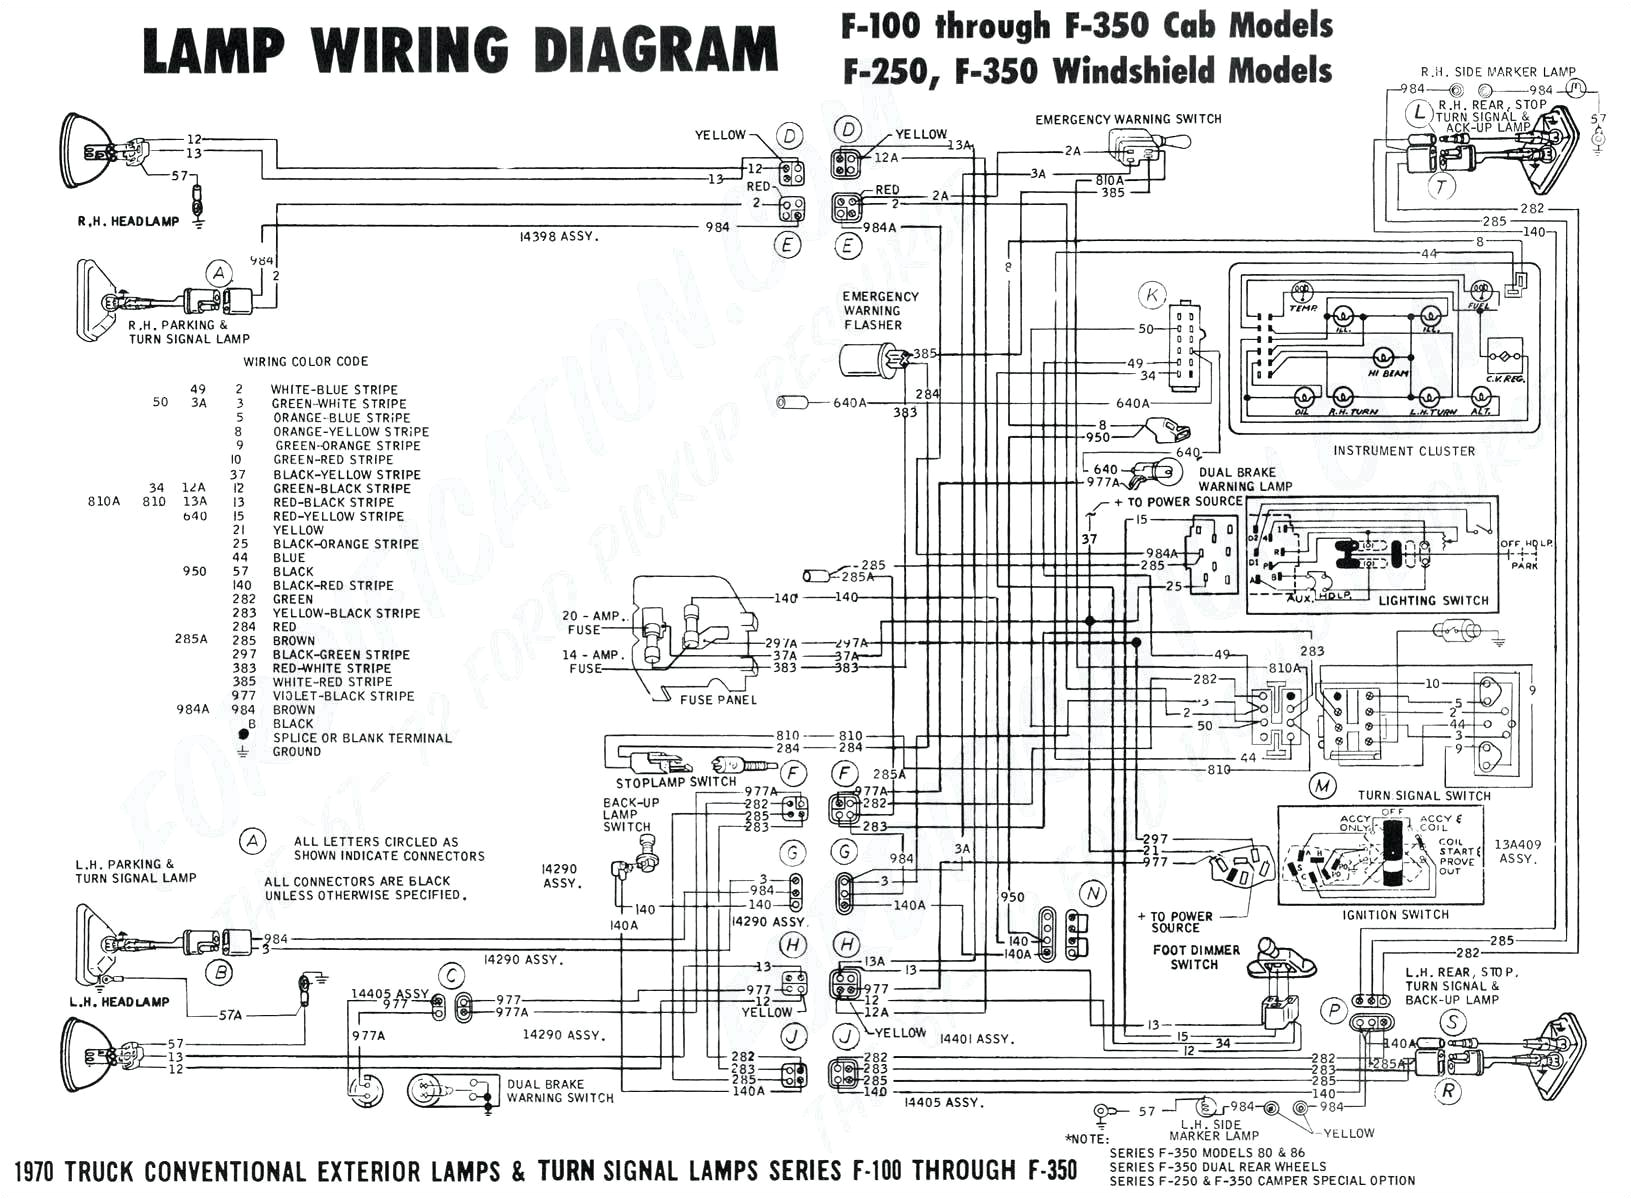 2002 F350 Wiring Diagram 02 F250 7 3l Wiring Diagram Wiring Diagram Sheet